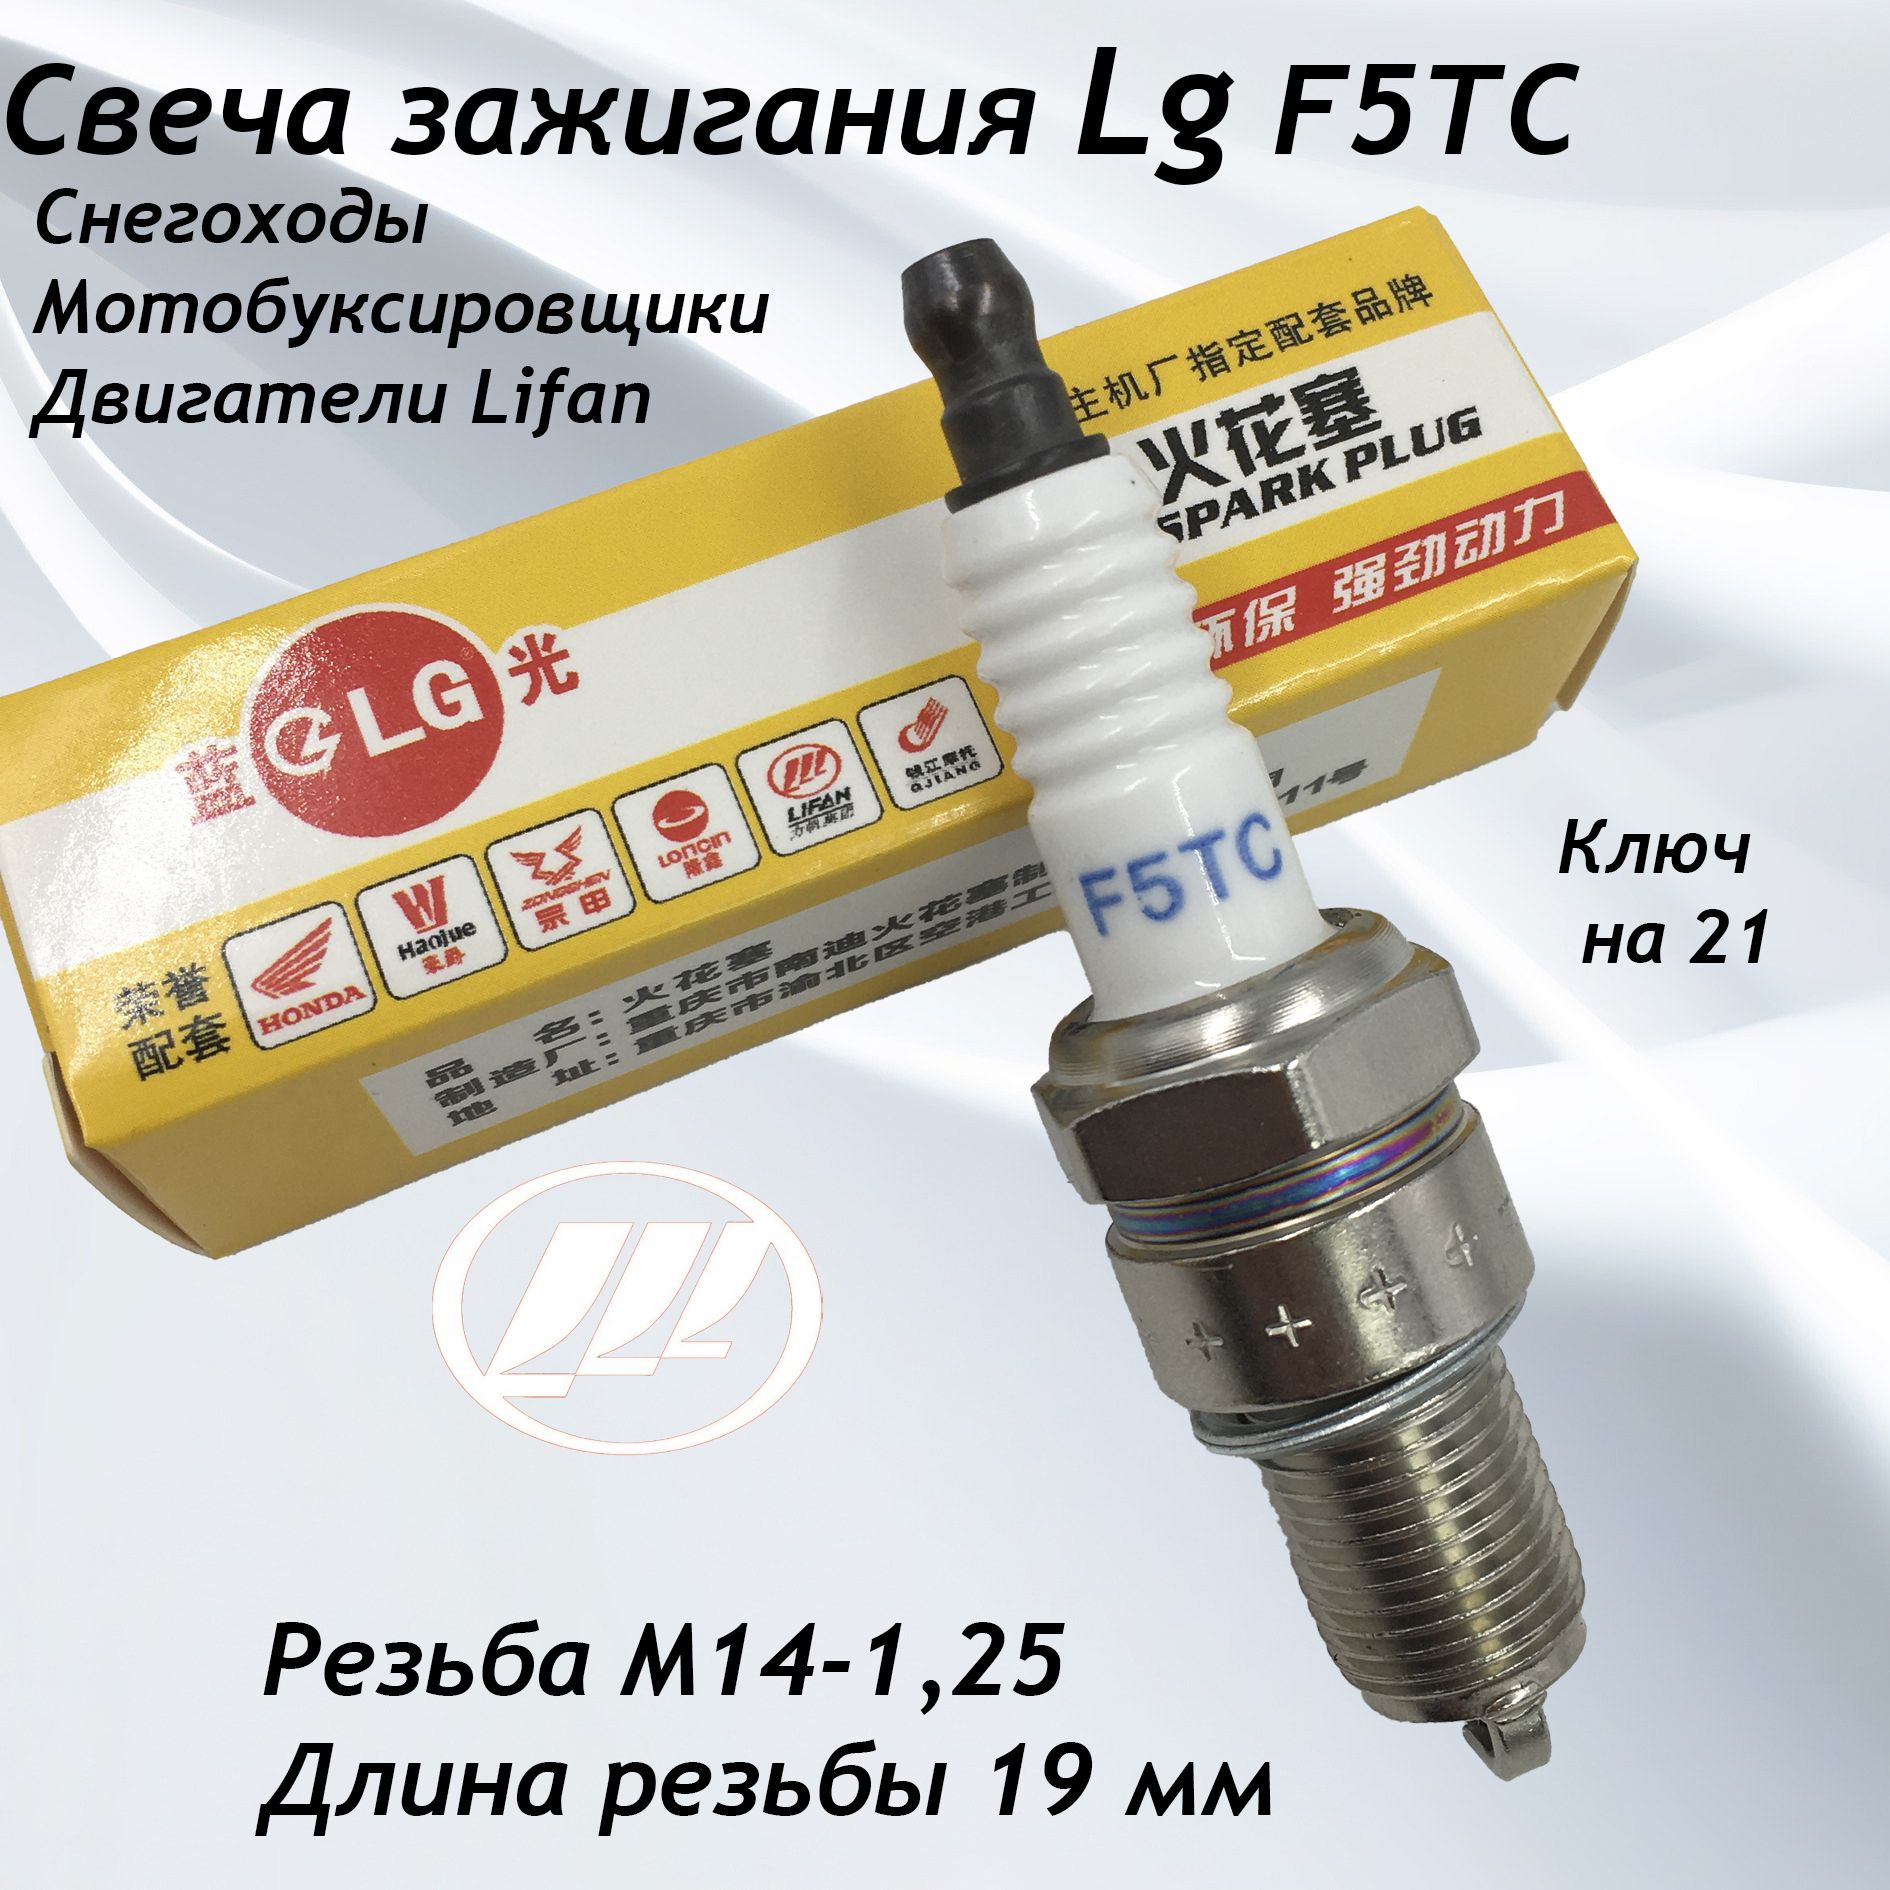 СвечазажиганияLgF5T(двигательлифан)Lifanдлямотоблока